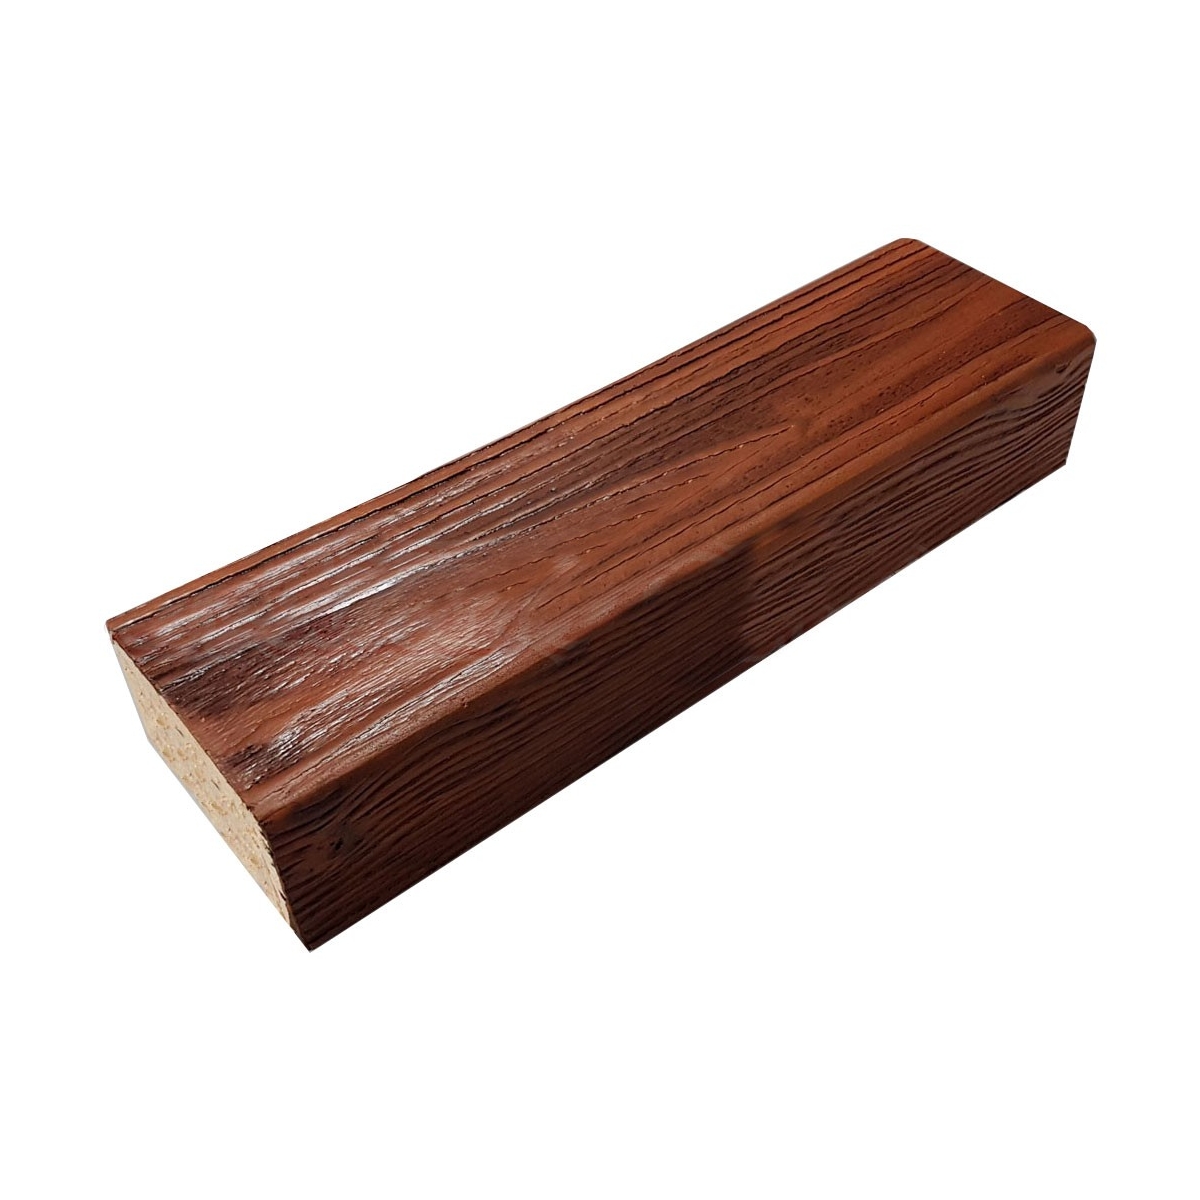 Viga imitación a madera fabricada en poliestireno extruido de 7X5x260  0